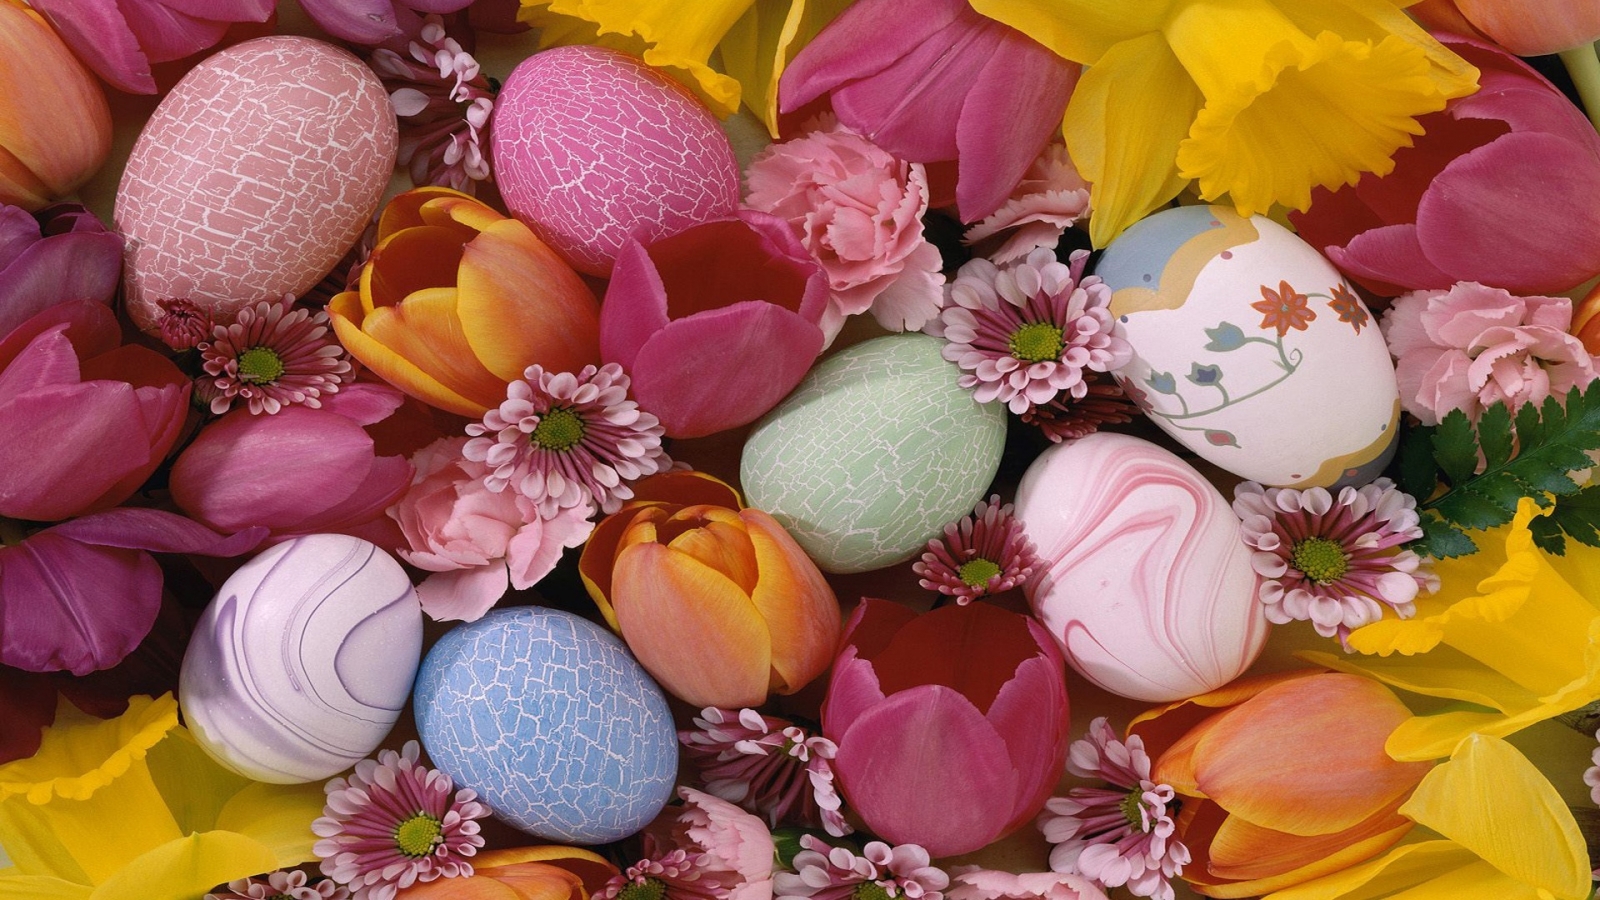 Easter Pastel Eggs for 1600 x 900 HDTV resolution